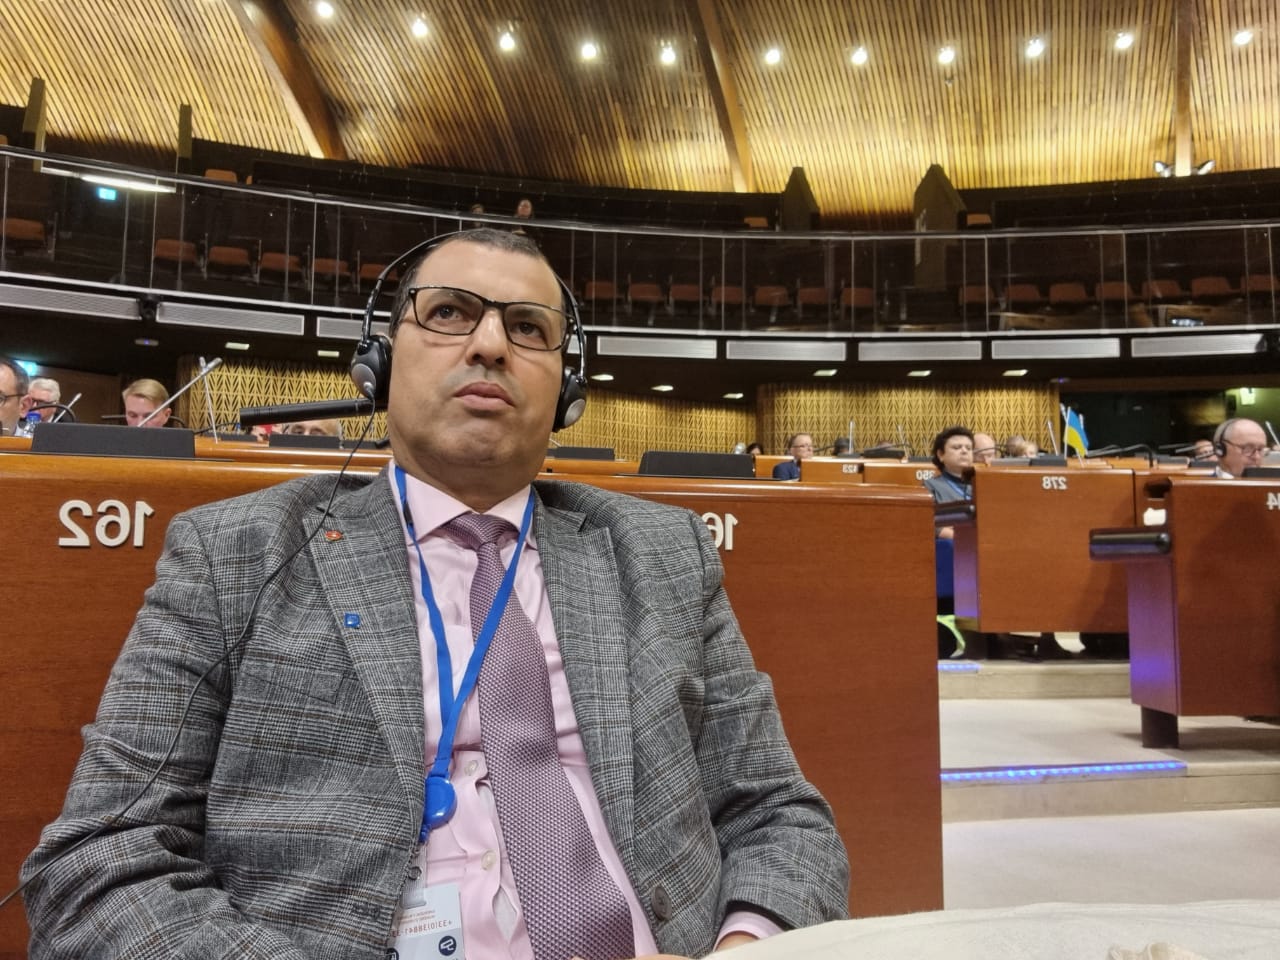 La participation de M. Abdelaziz DEROUICHE,  Président de l’Association Marocaine des Présidents des Conseils des Préfectures et des Provinces, aux travaux de la 42ème session de la Conférence des Pouvoirs Locaux et Régionaux du Conseil de l’Europe du 24 au 25 mars 2022 à Strasbourg.